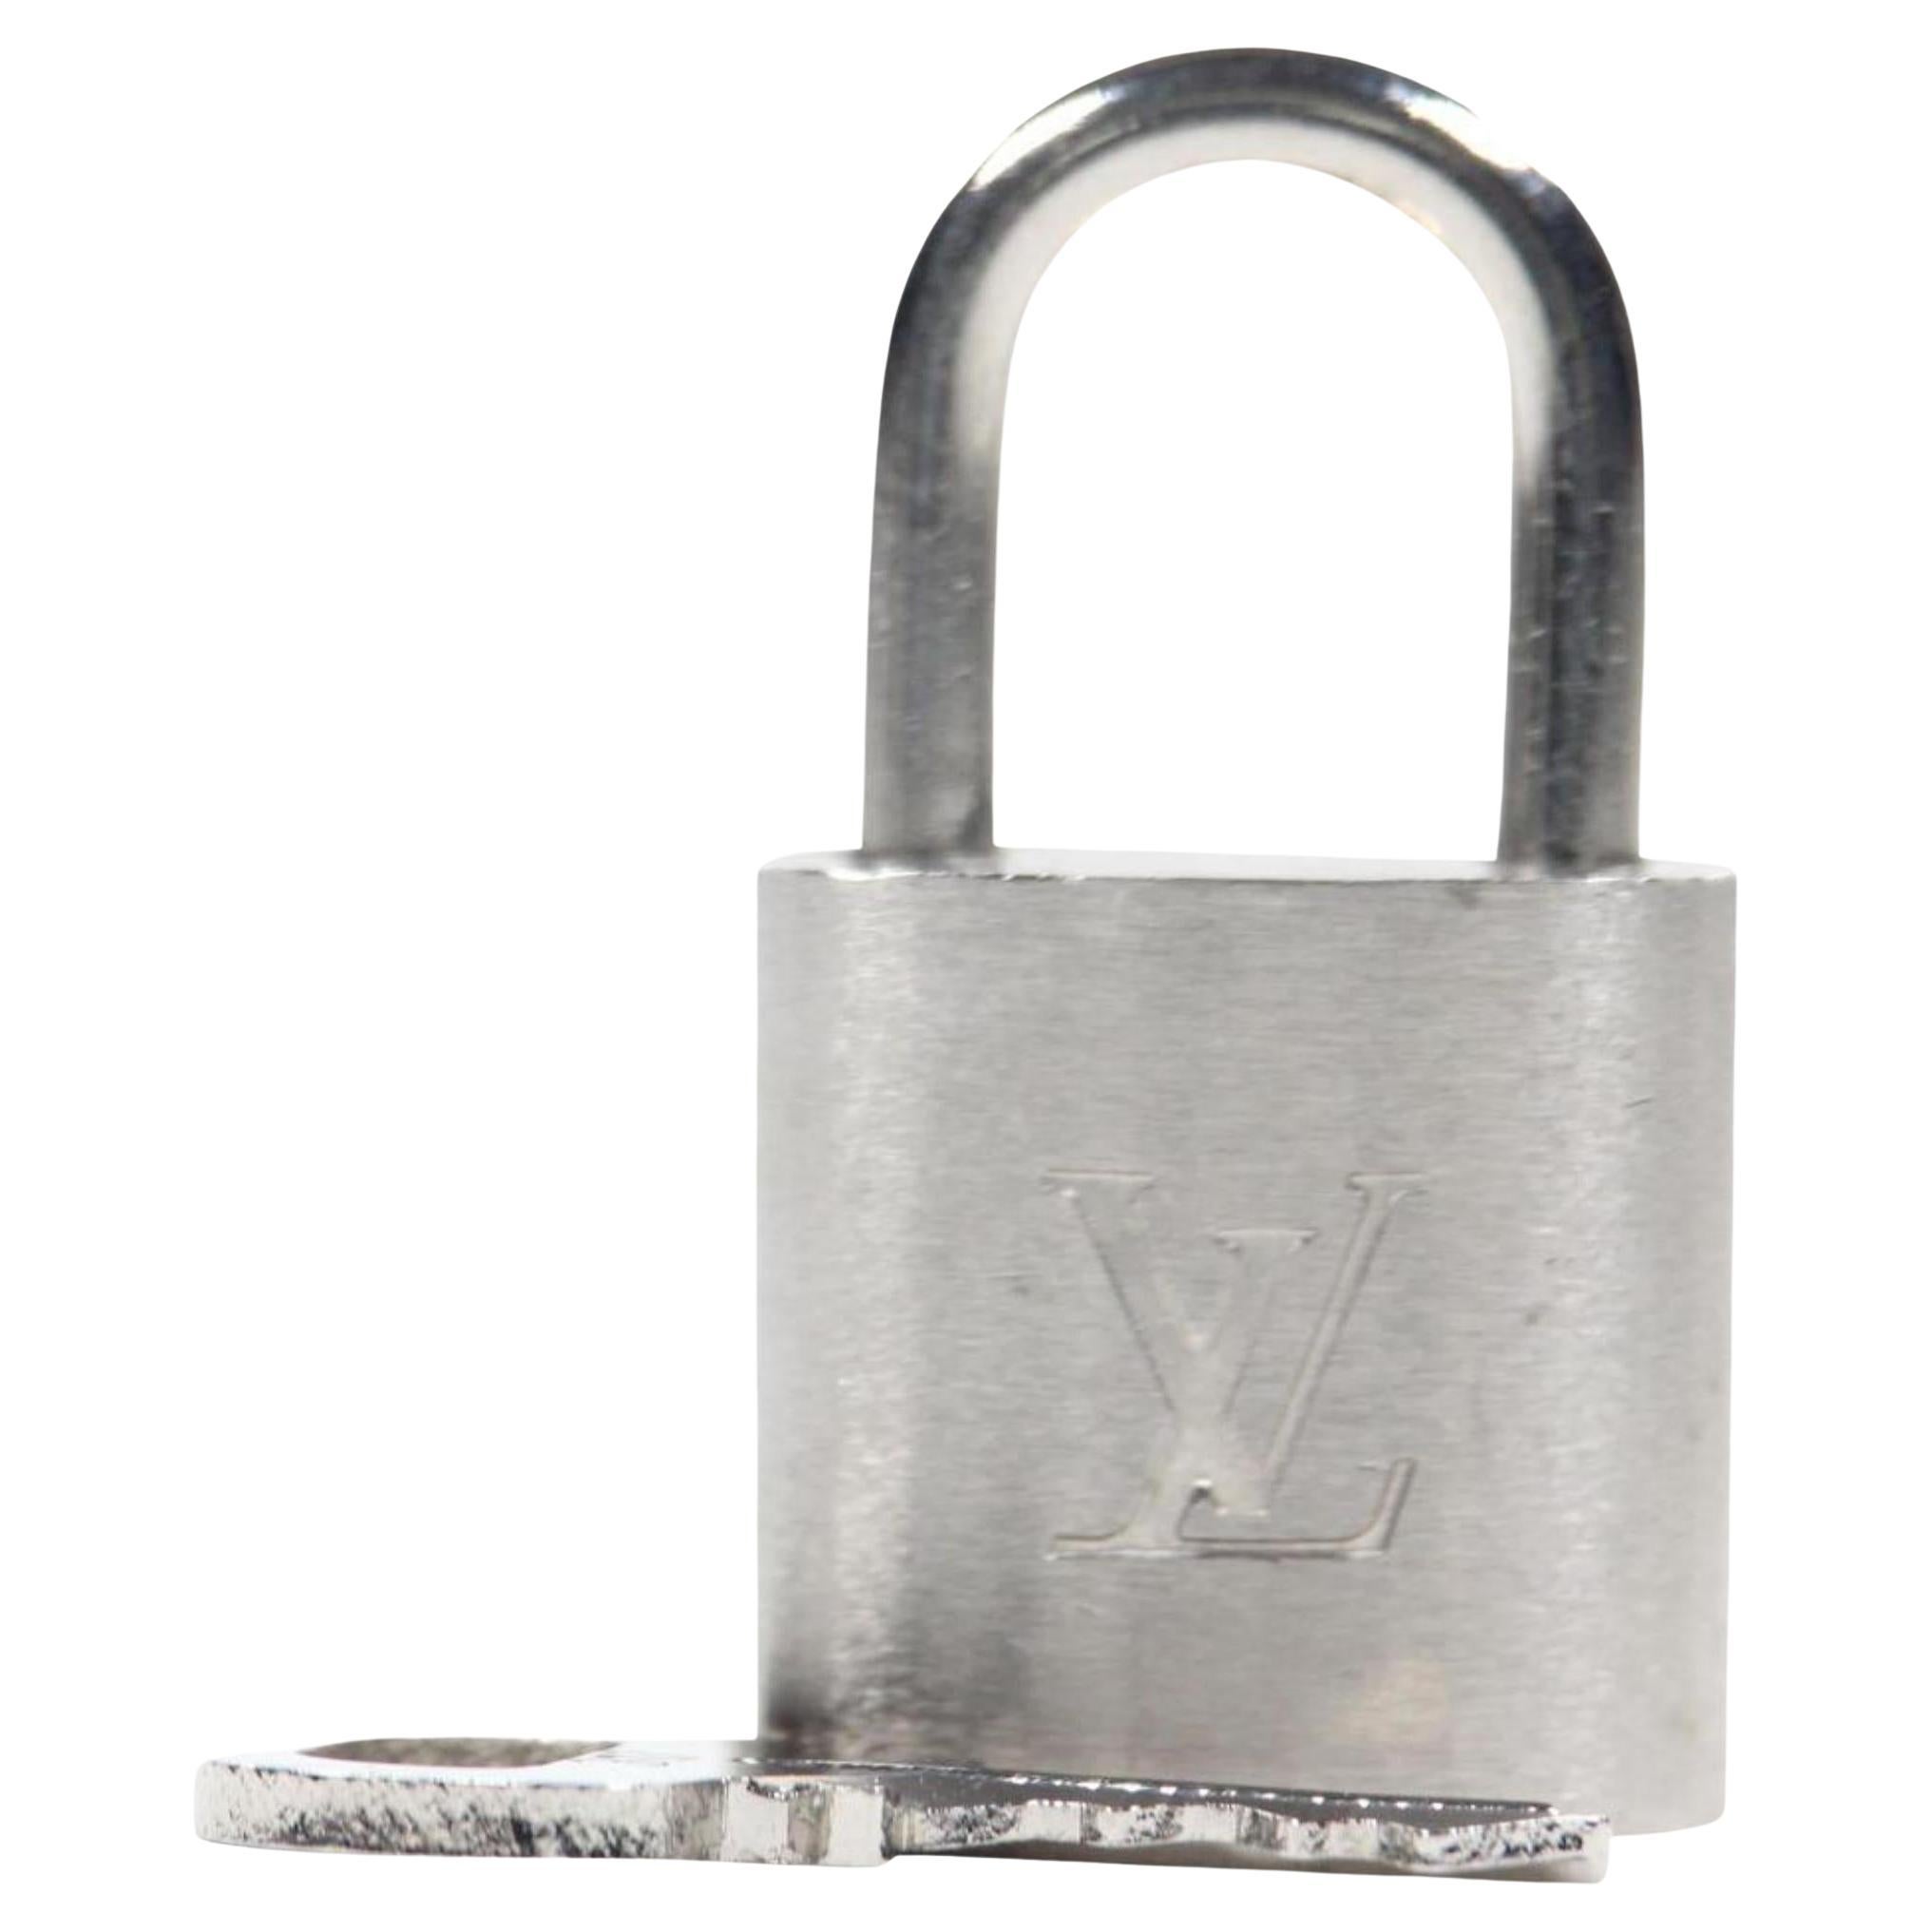 Louis Vuitton Brushed Silver Matte Padlock and Key Bag Charm Lock